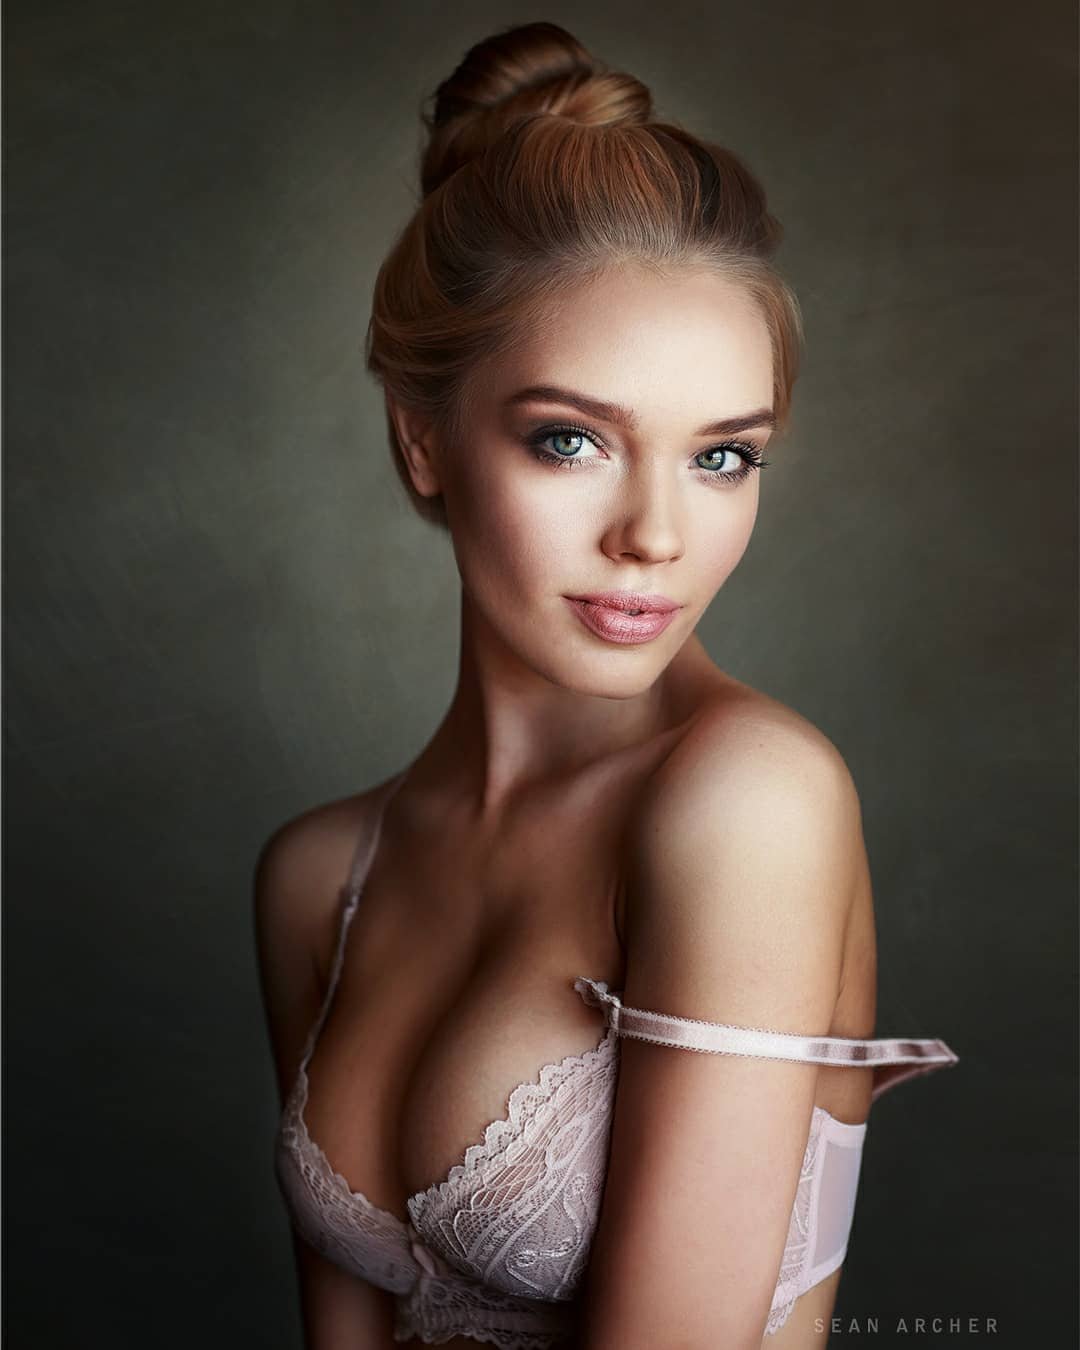 Sean Archer Fotografo - Modelo ruiva em retrato sensual de lingerie